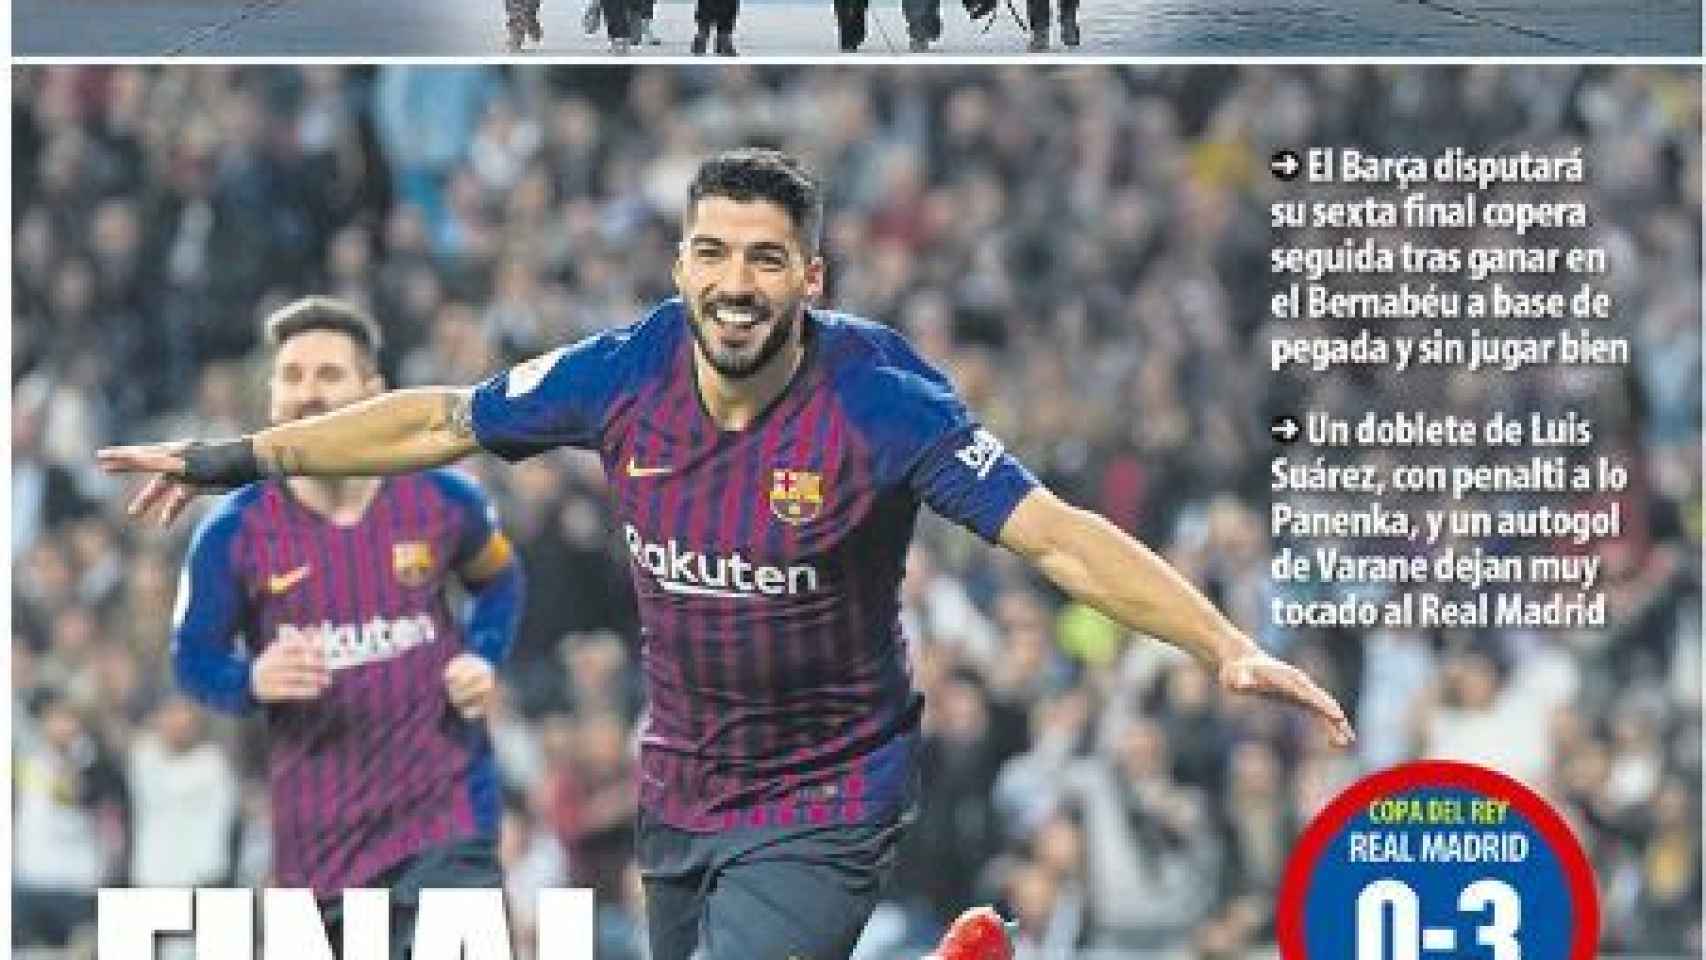 La portada del diario Mundo Deportivo (28/02/19)